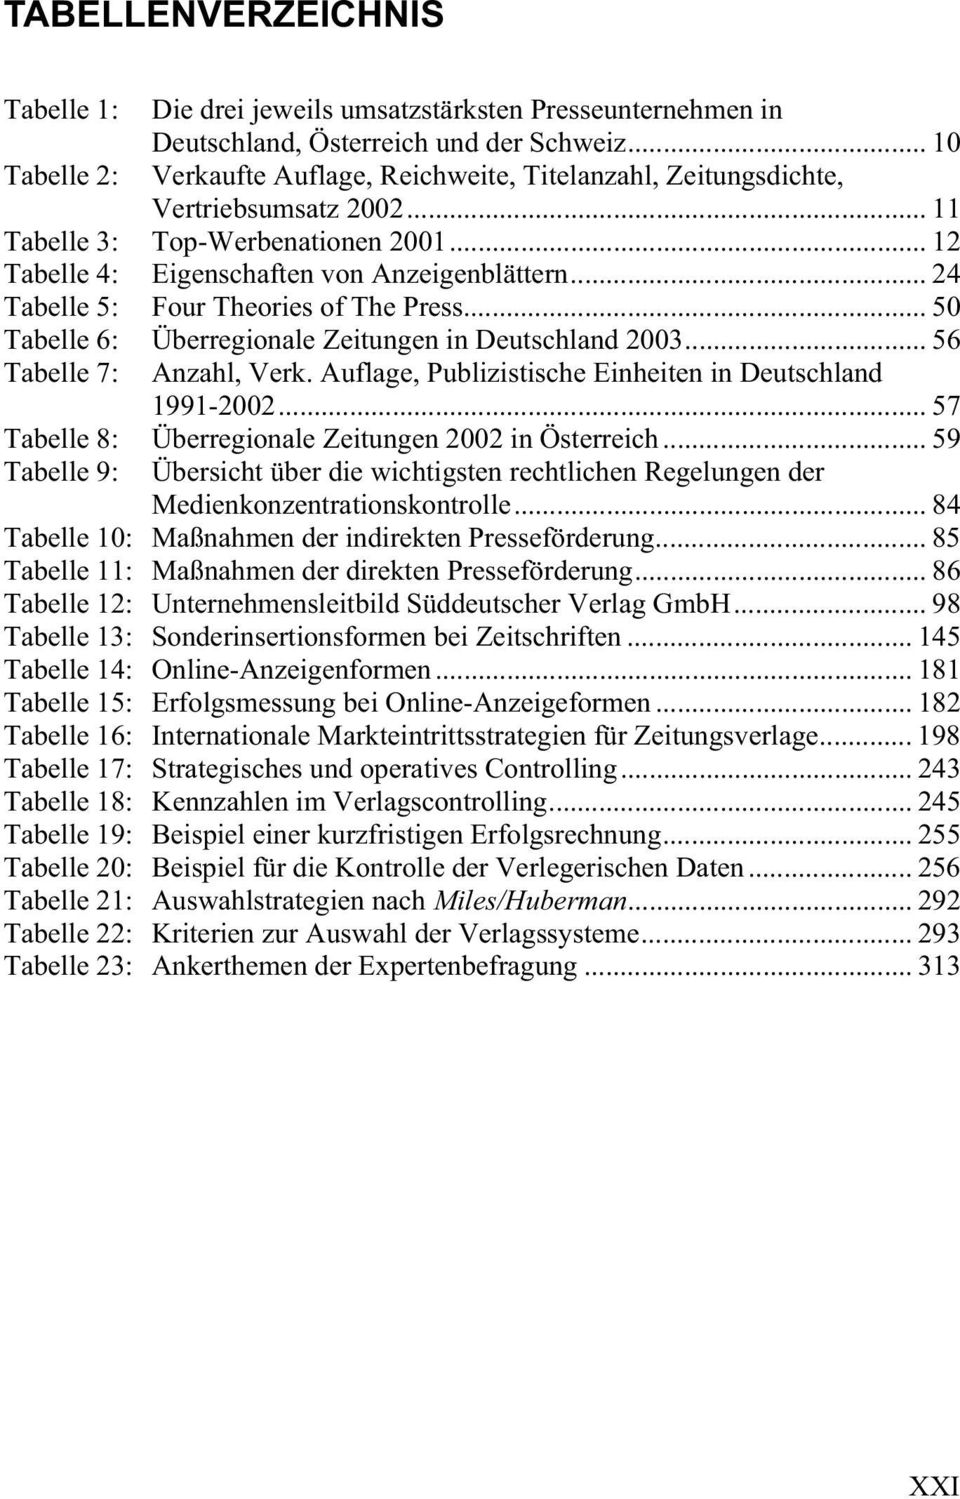 .. 24 Tabelle 5: Four Theories of The Press... 50 Tabelle 6: Überregionale Zeitungen in Deutschland 2003... 56 Tabelle 7: Anzahl, Verk. Auflage, Publizistische Einheiten in Deutschland 1991-2002.